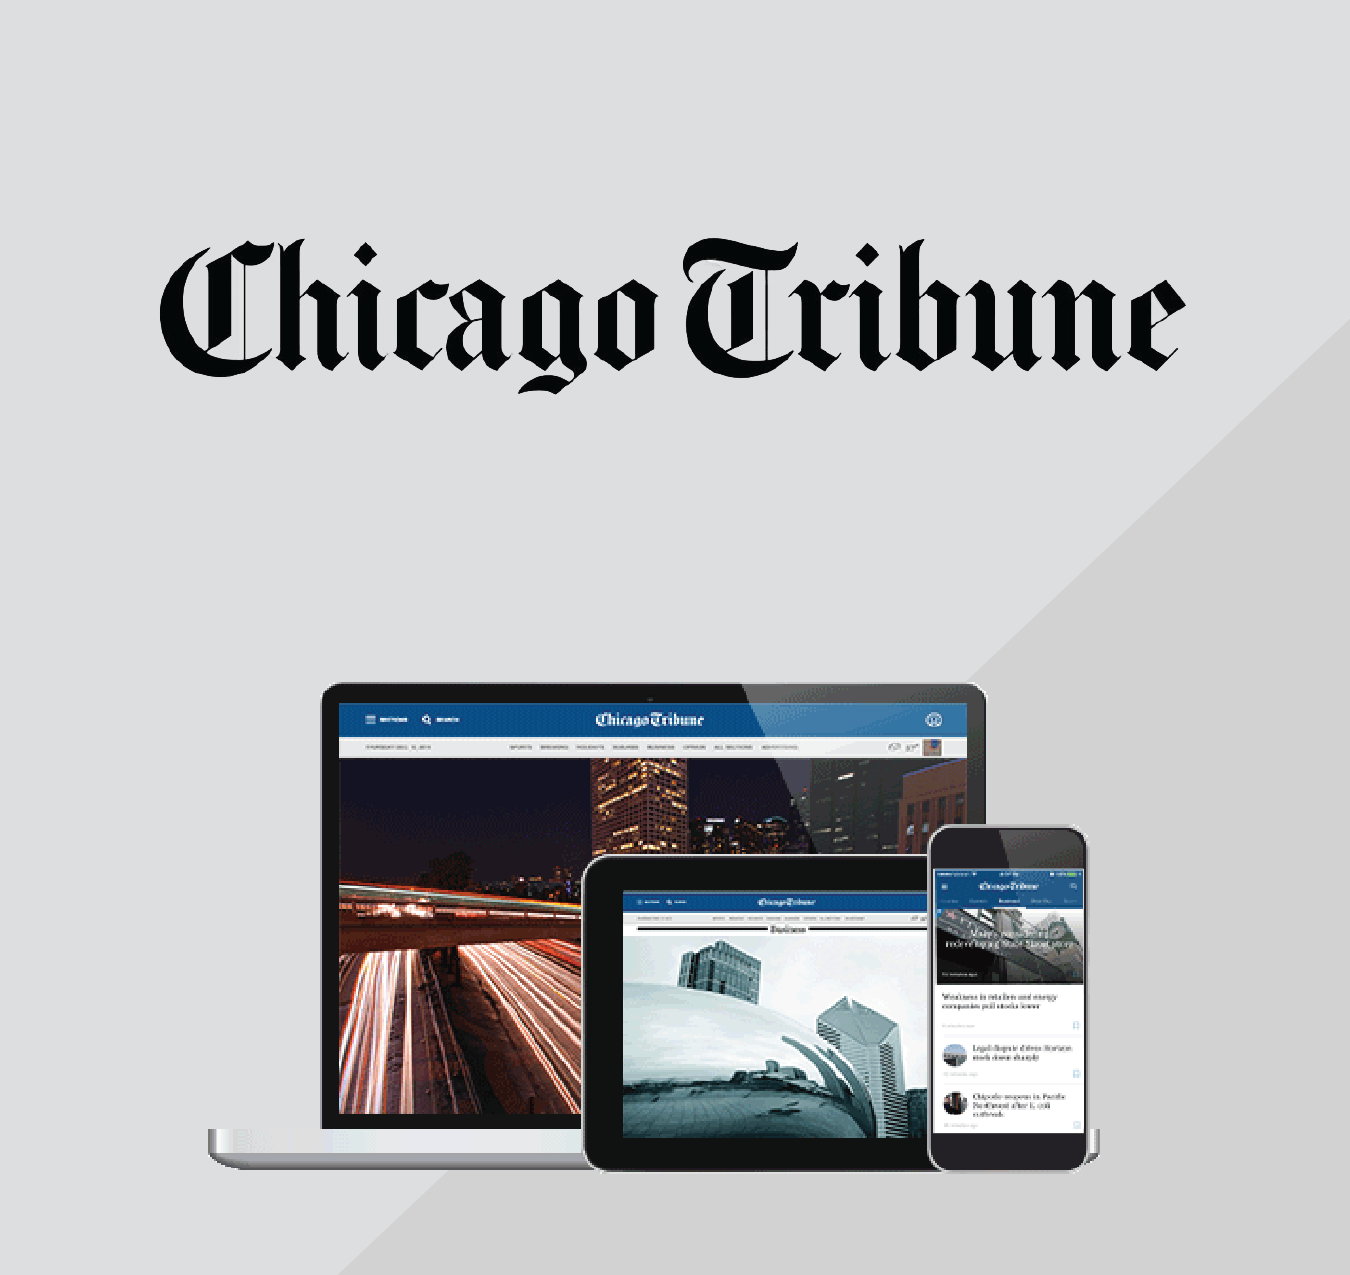 Chicago Tribune Digital Image